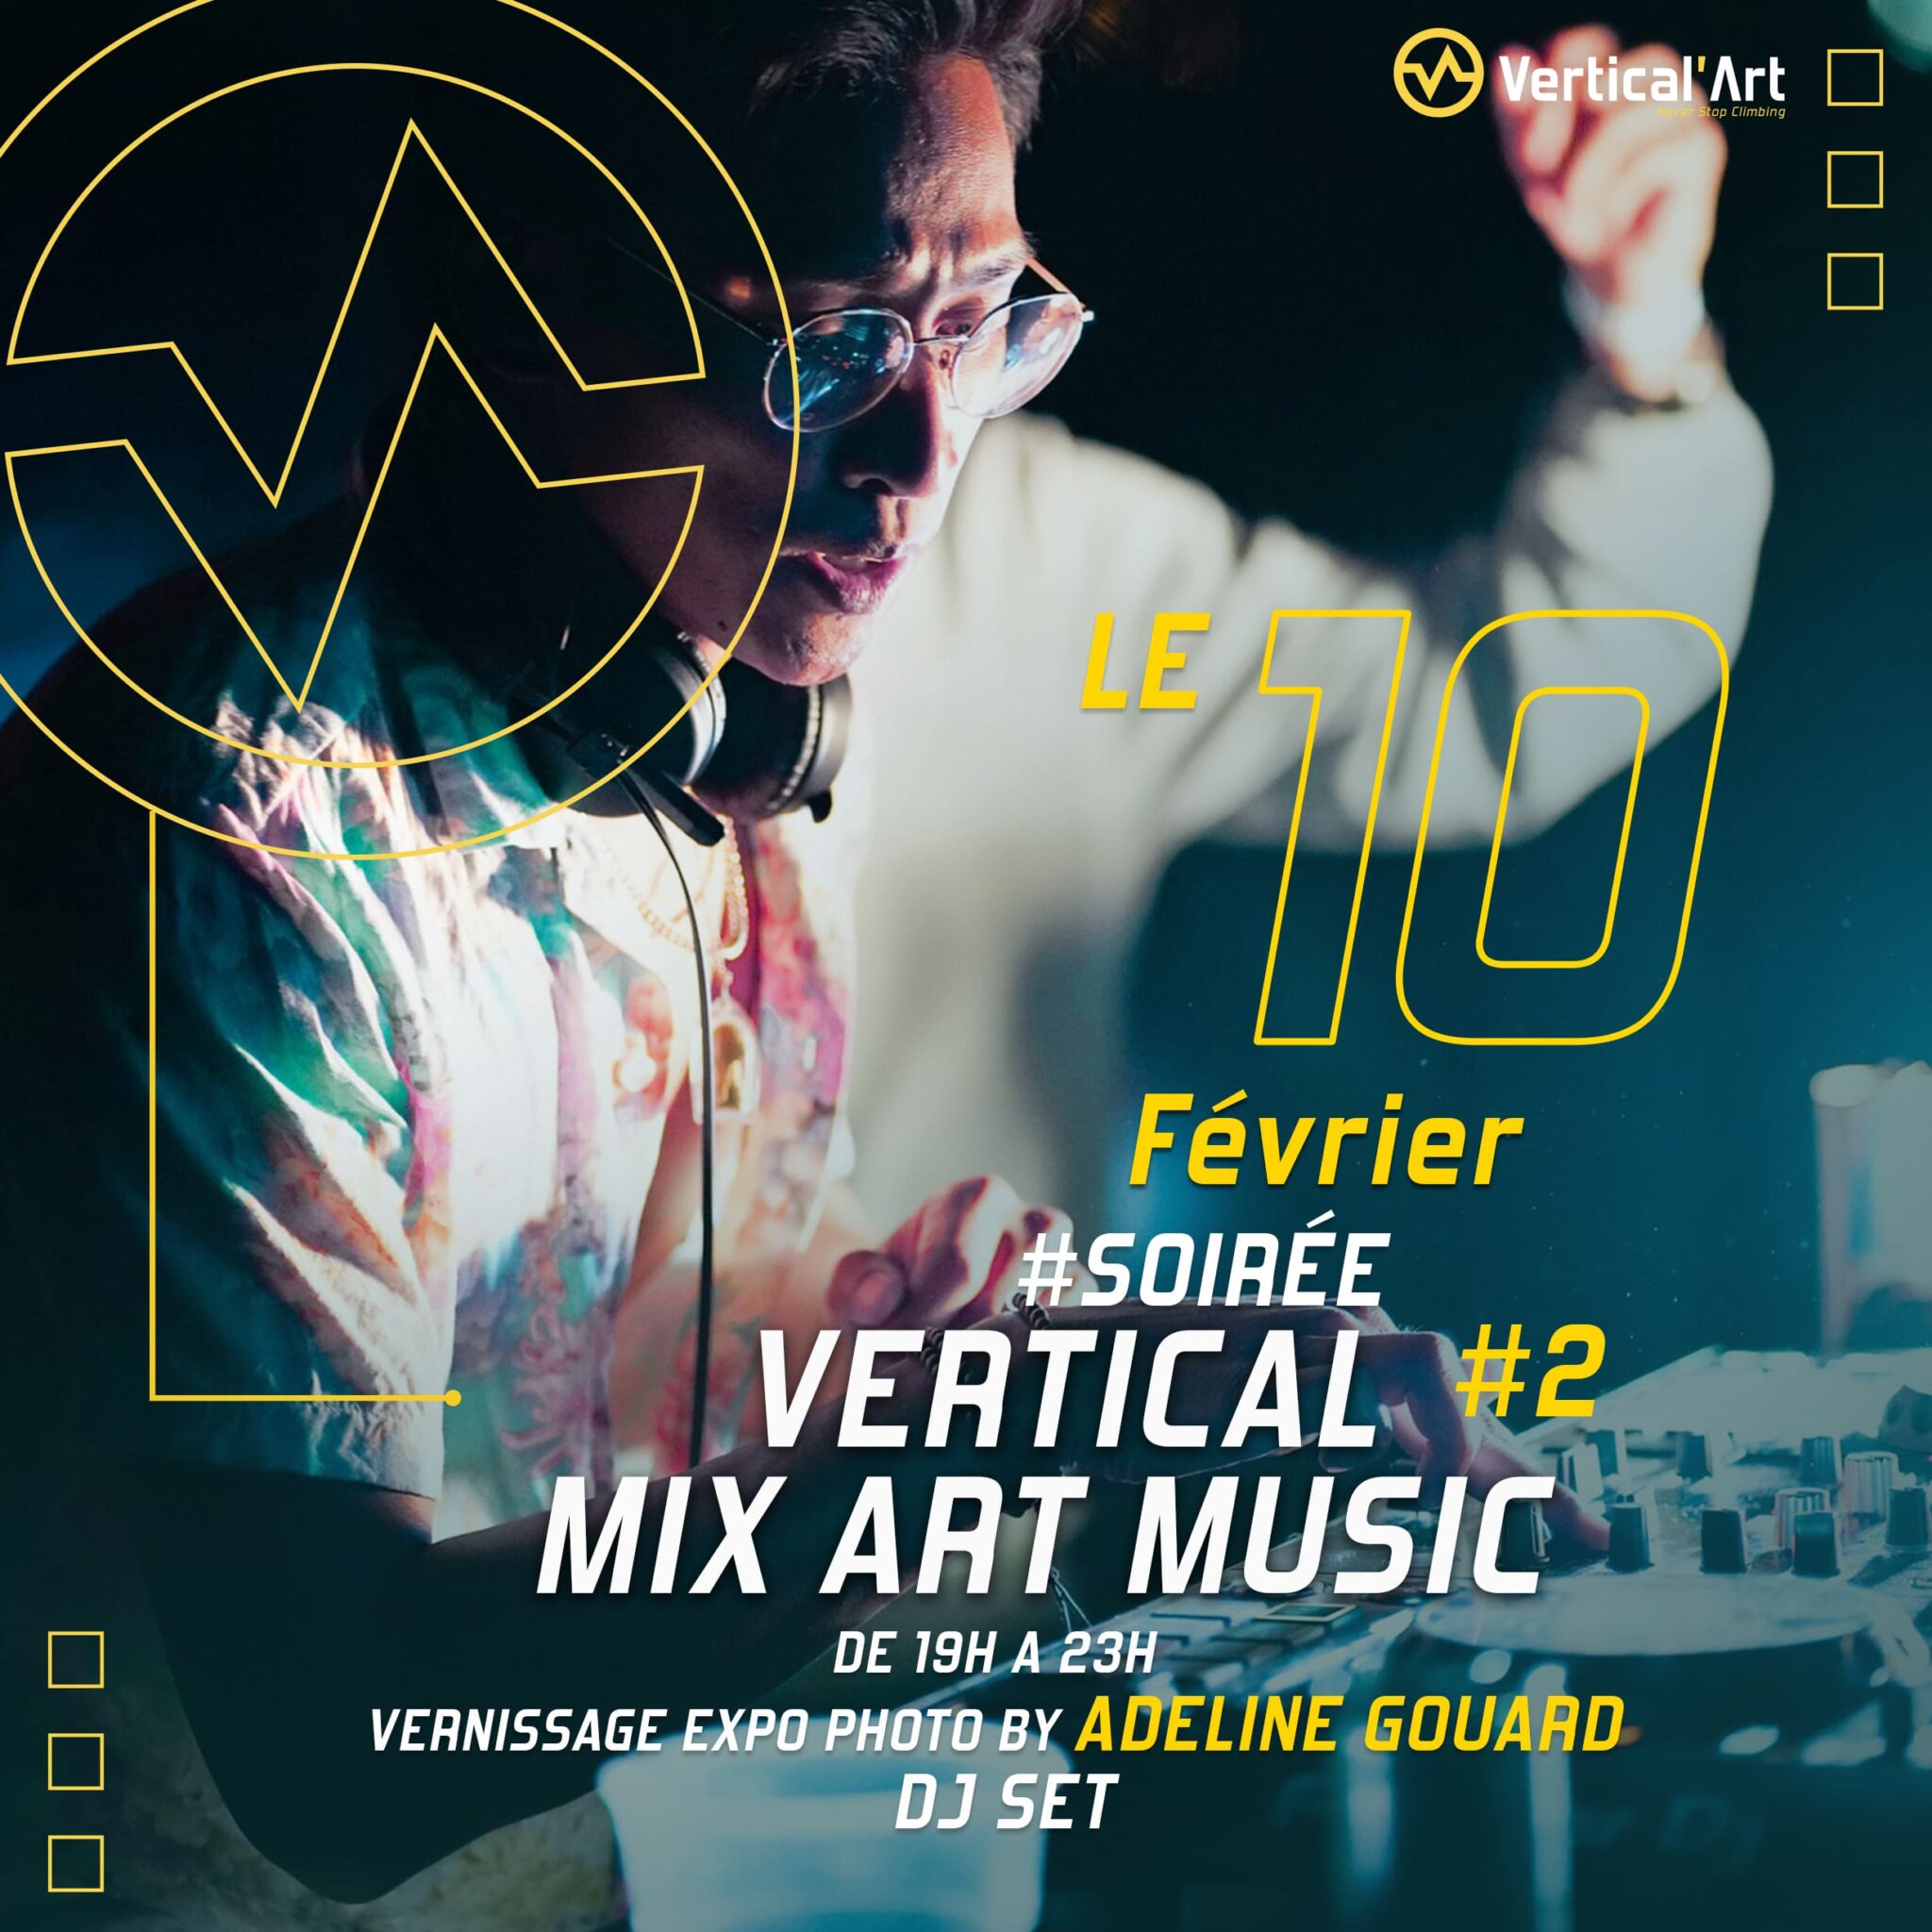 Soirée Vertical'Mix Art/Music #2 à Vertical'Art Le Mans vendredi 10 février avec DJ Sothy et Adeline Gouard